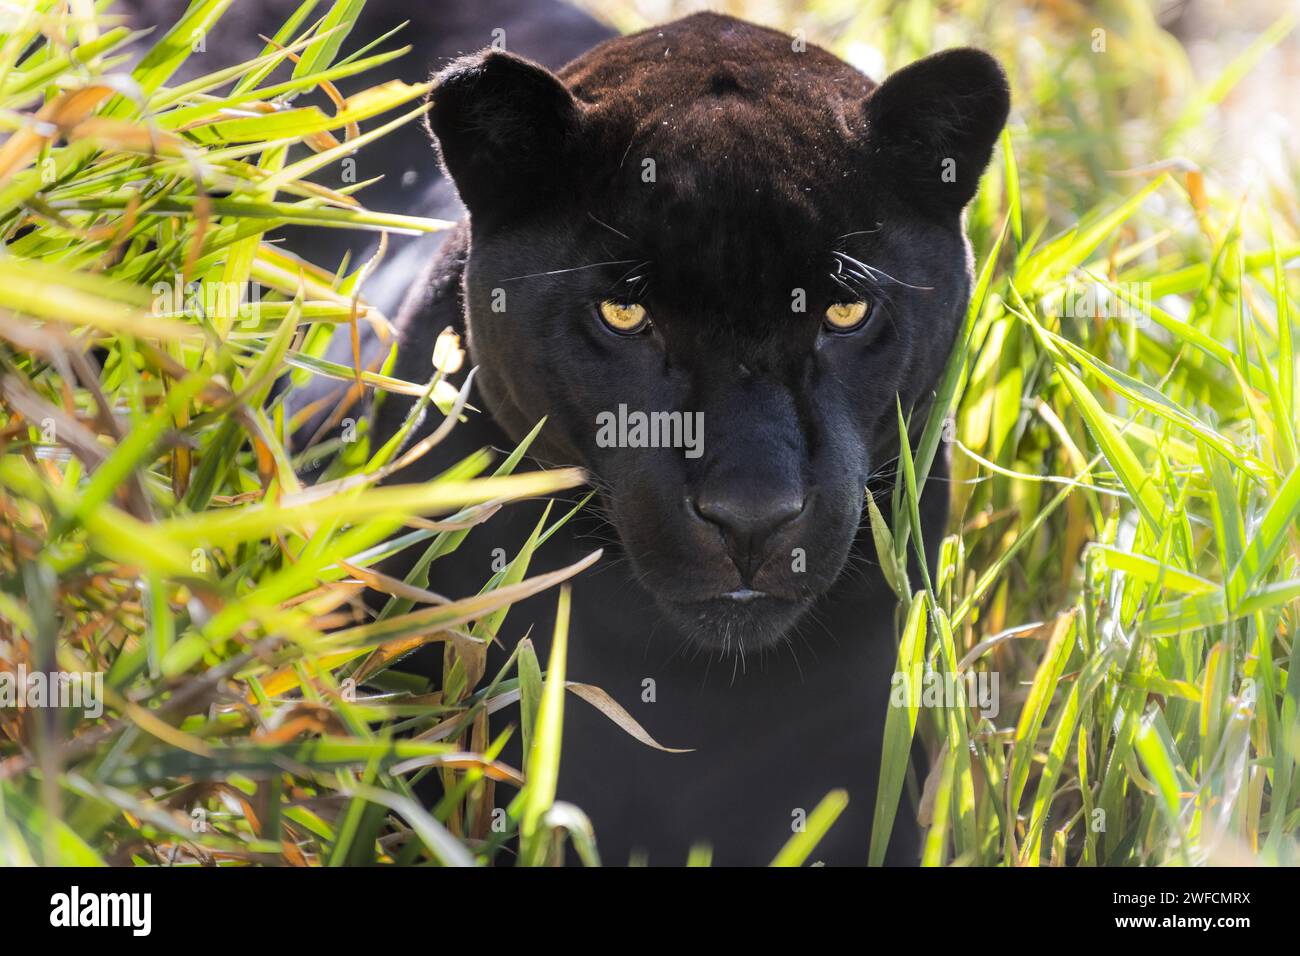 giaguaro melanico o giaguaro nero - Parco nazionale EMAS - specie in via di estinzione Foto Stock